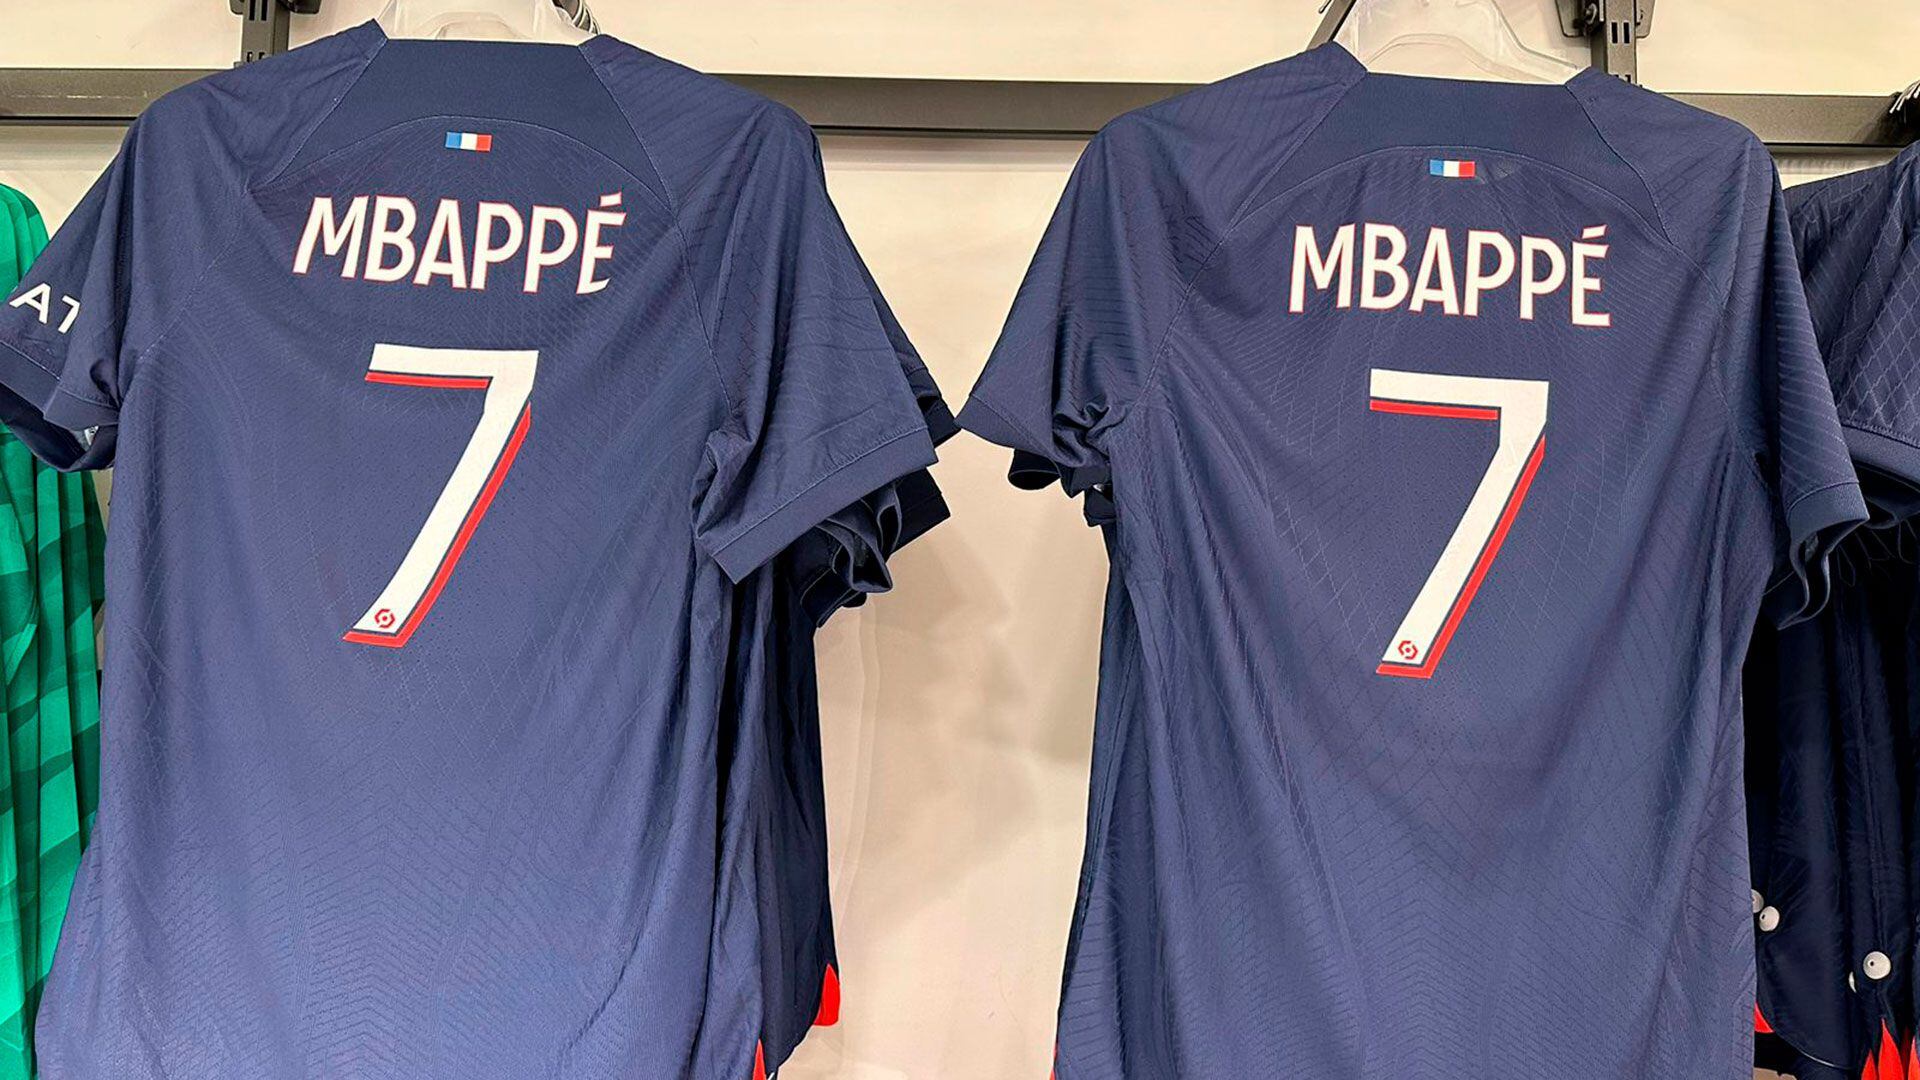 La camiseta de Mbappé, la única pre-impresa de la nueva colección